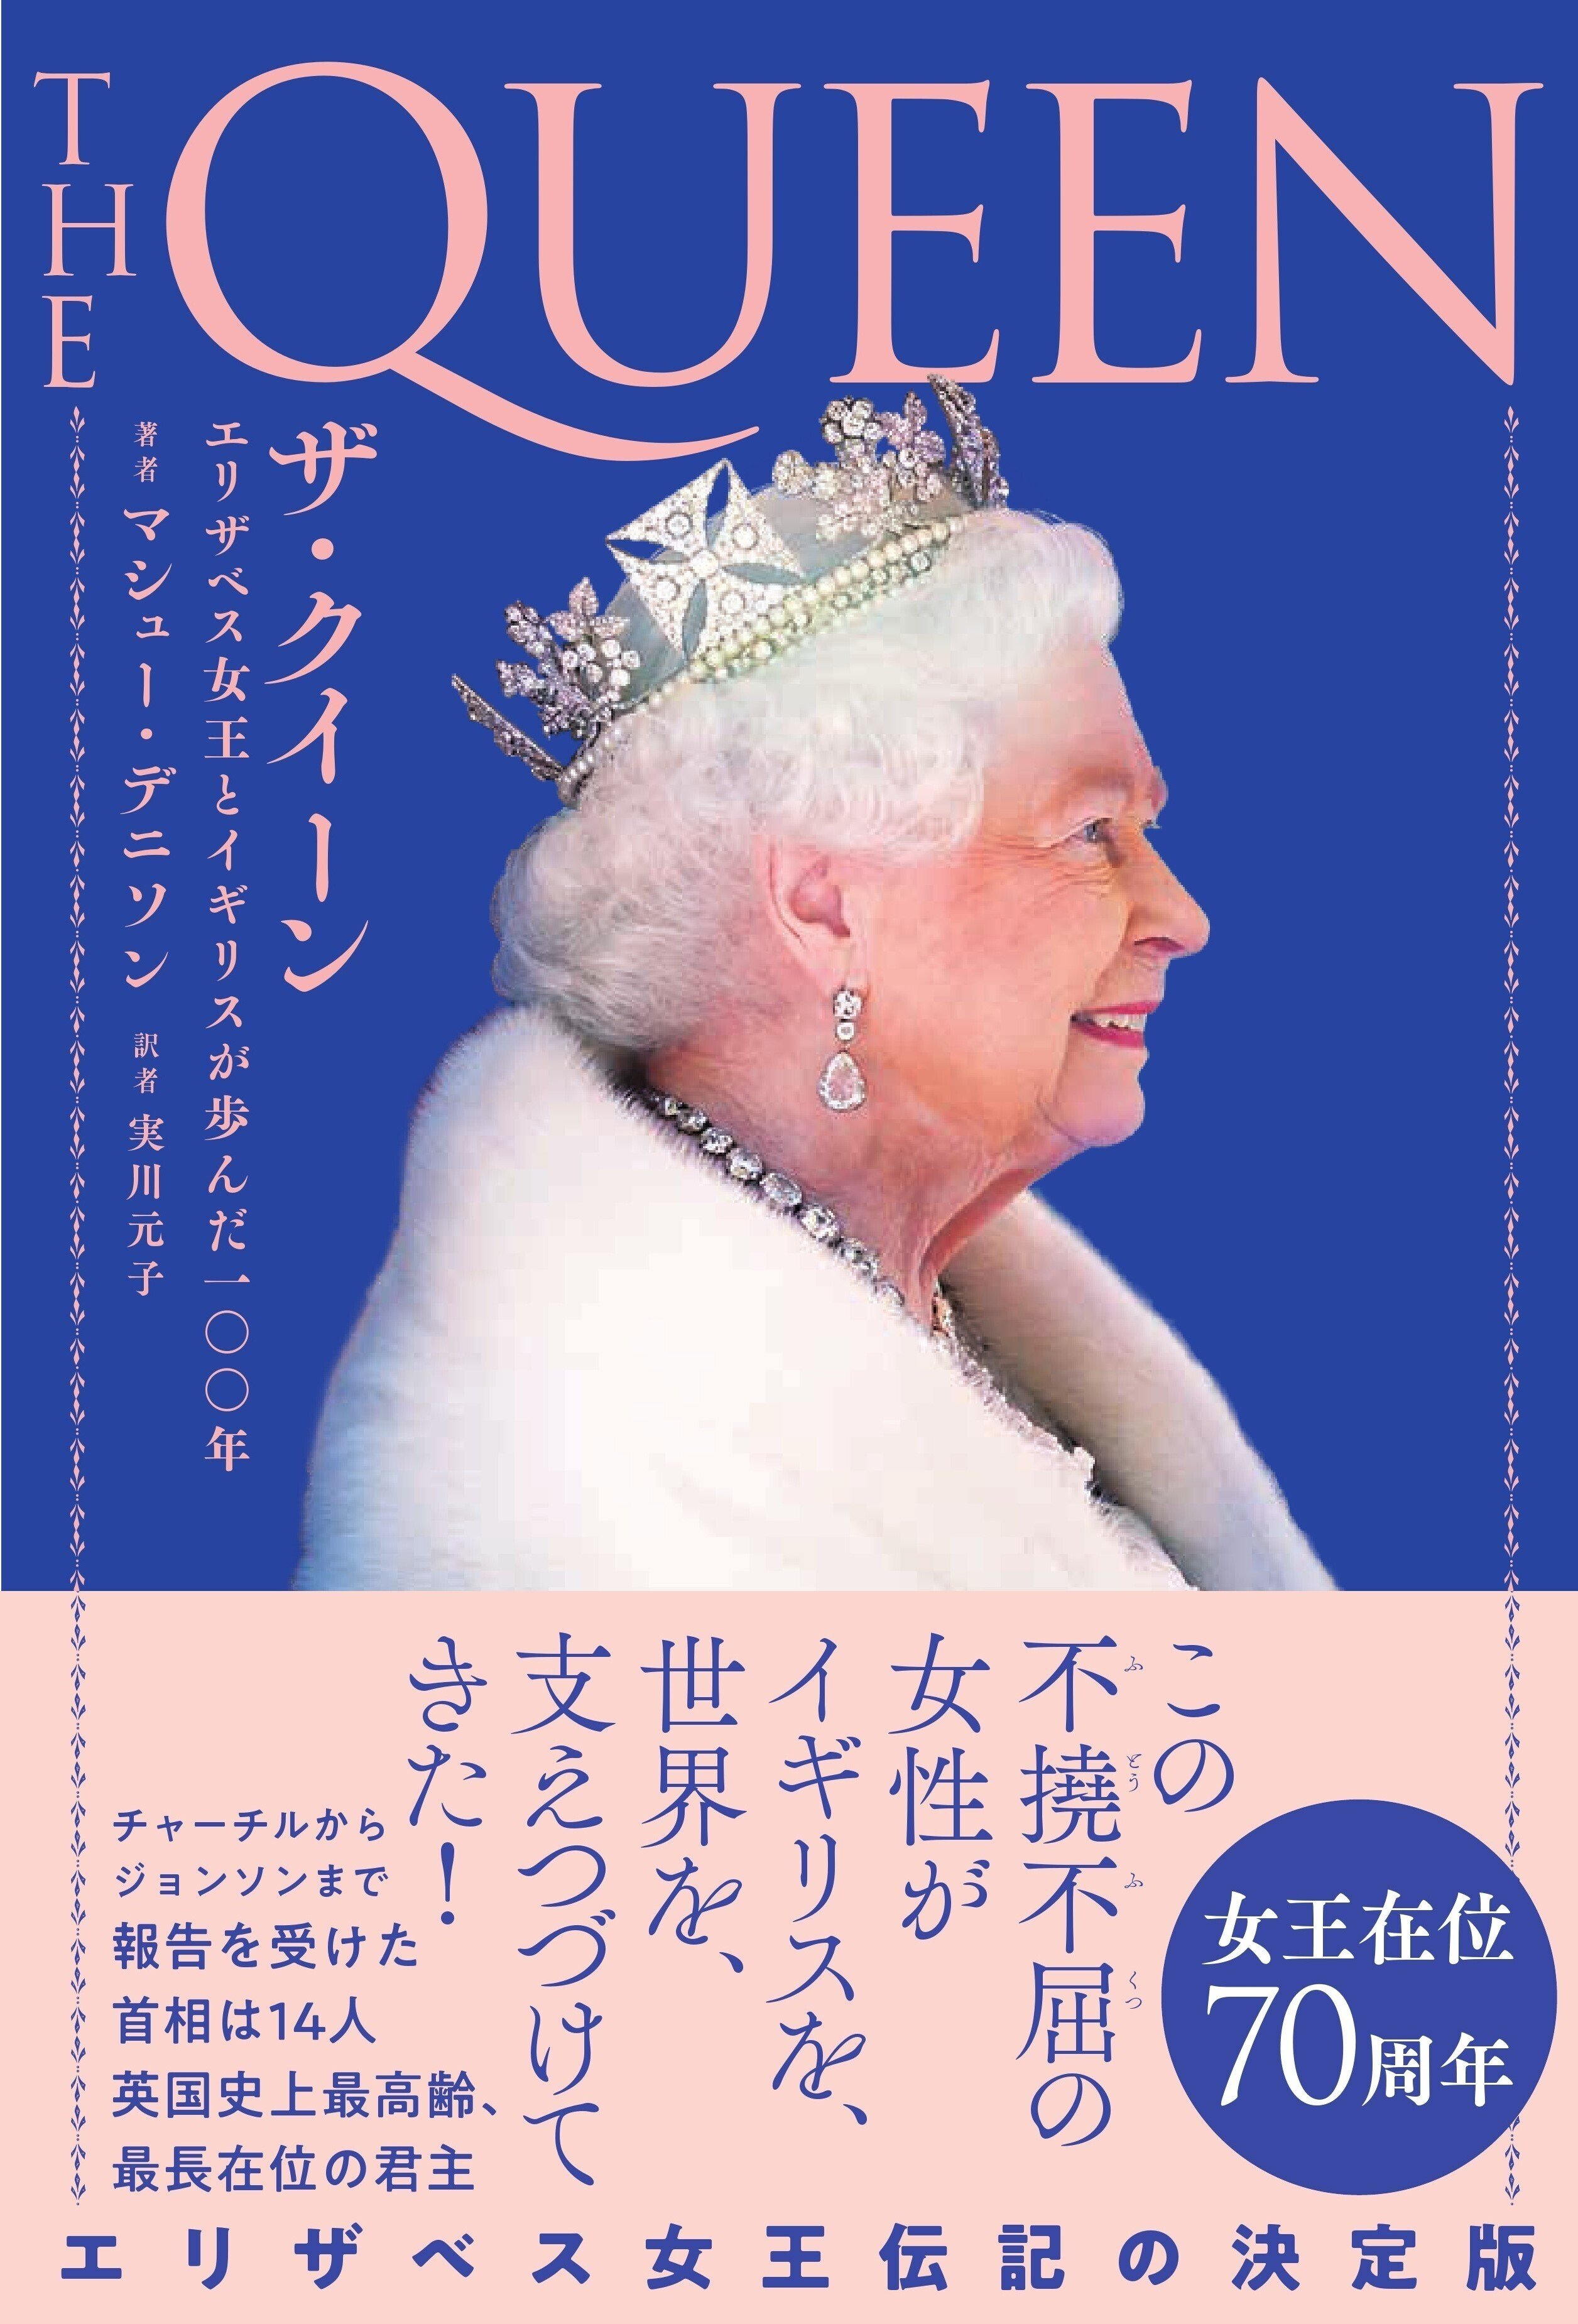 訳者あとがき【#全文公開 『ザ・クイーン エリザベス女王とイギリスが